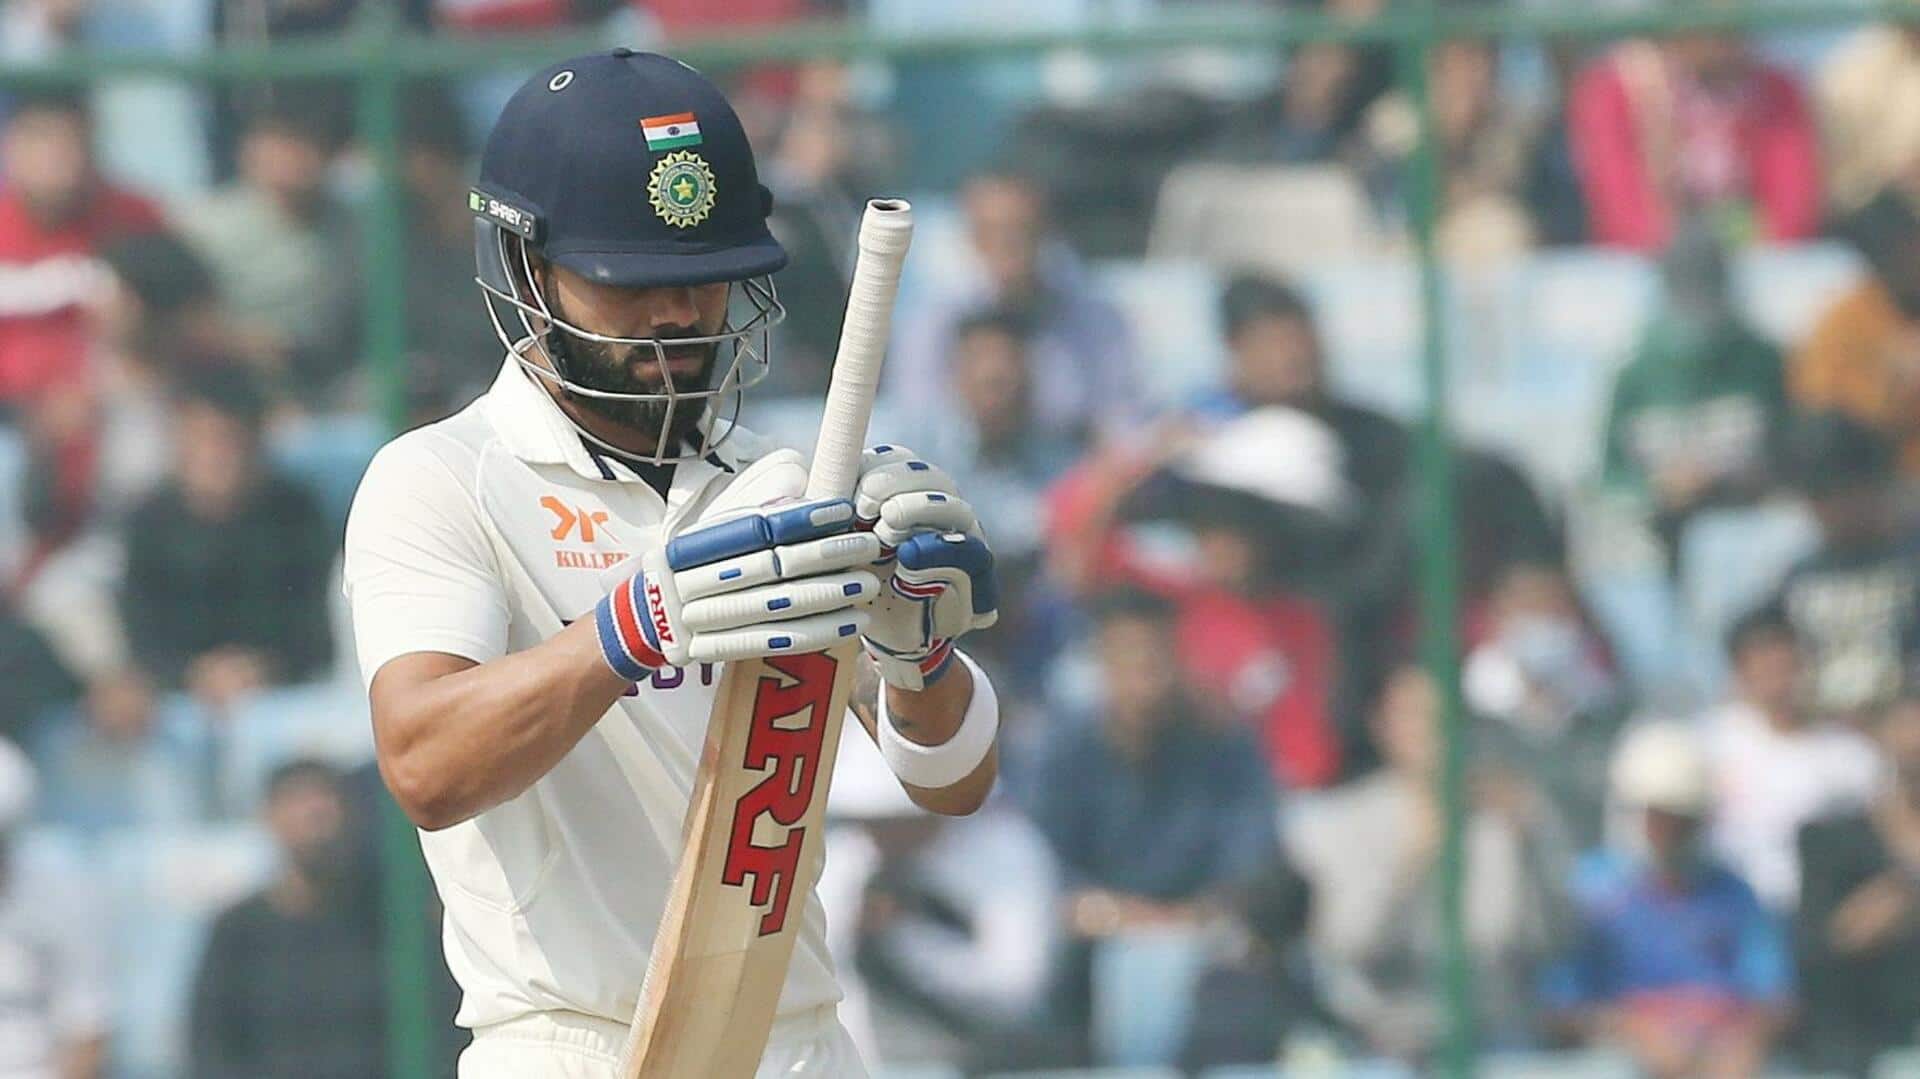 भारत बनाम ऑस्ट्रेलिया, दूसरा टेस्ट: विराट कोहली के आउट होने पर छिड़ा विवाद, जानिए पूरा मामला 